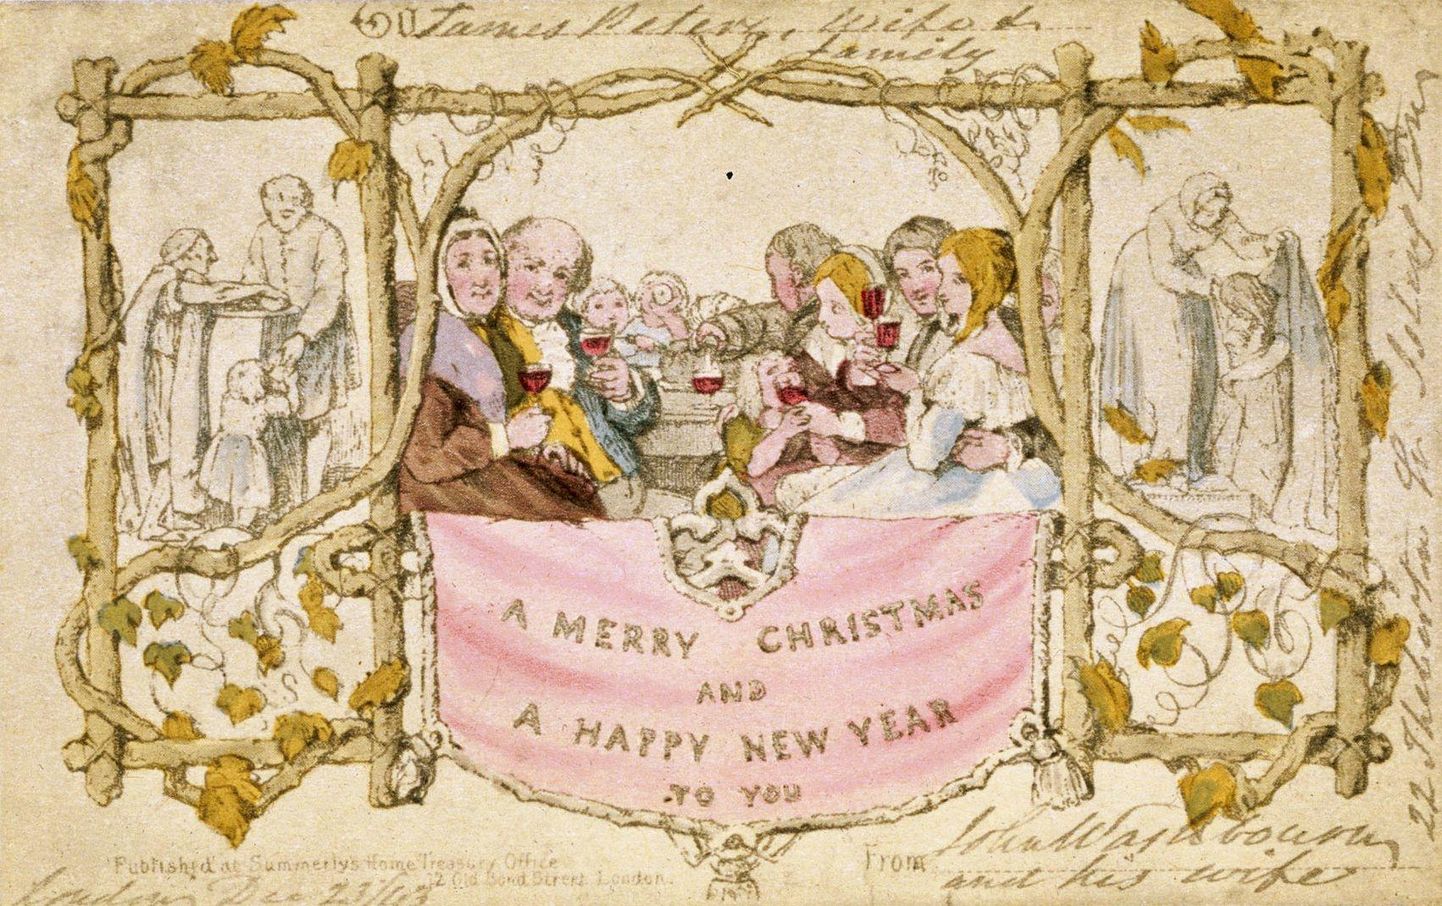 Maailma esimese trükitud jõulupostkaardi (fotol) tellis 175 aastat tagasi inglise ettevõtja, leiutaja ja ühiskonnategelane Sir Henry Cole. Et jõulukaarte leiab paljude kujunduste, kujude ja suurustega, on see kollektsionääride lemmikasi. Mõnelt oksjonilt võib leida väga kõrge hinnaga kaarte. Üks maailma esimesi jõulukaarte müüdi 22 250 naelaga.